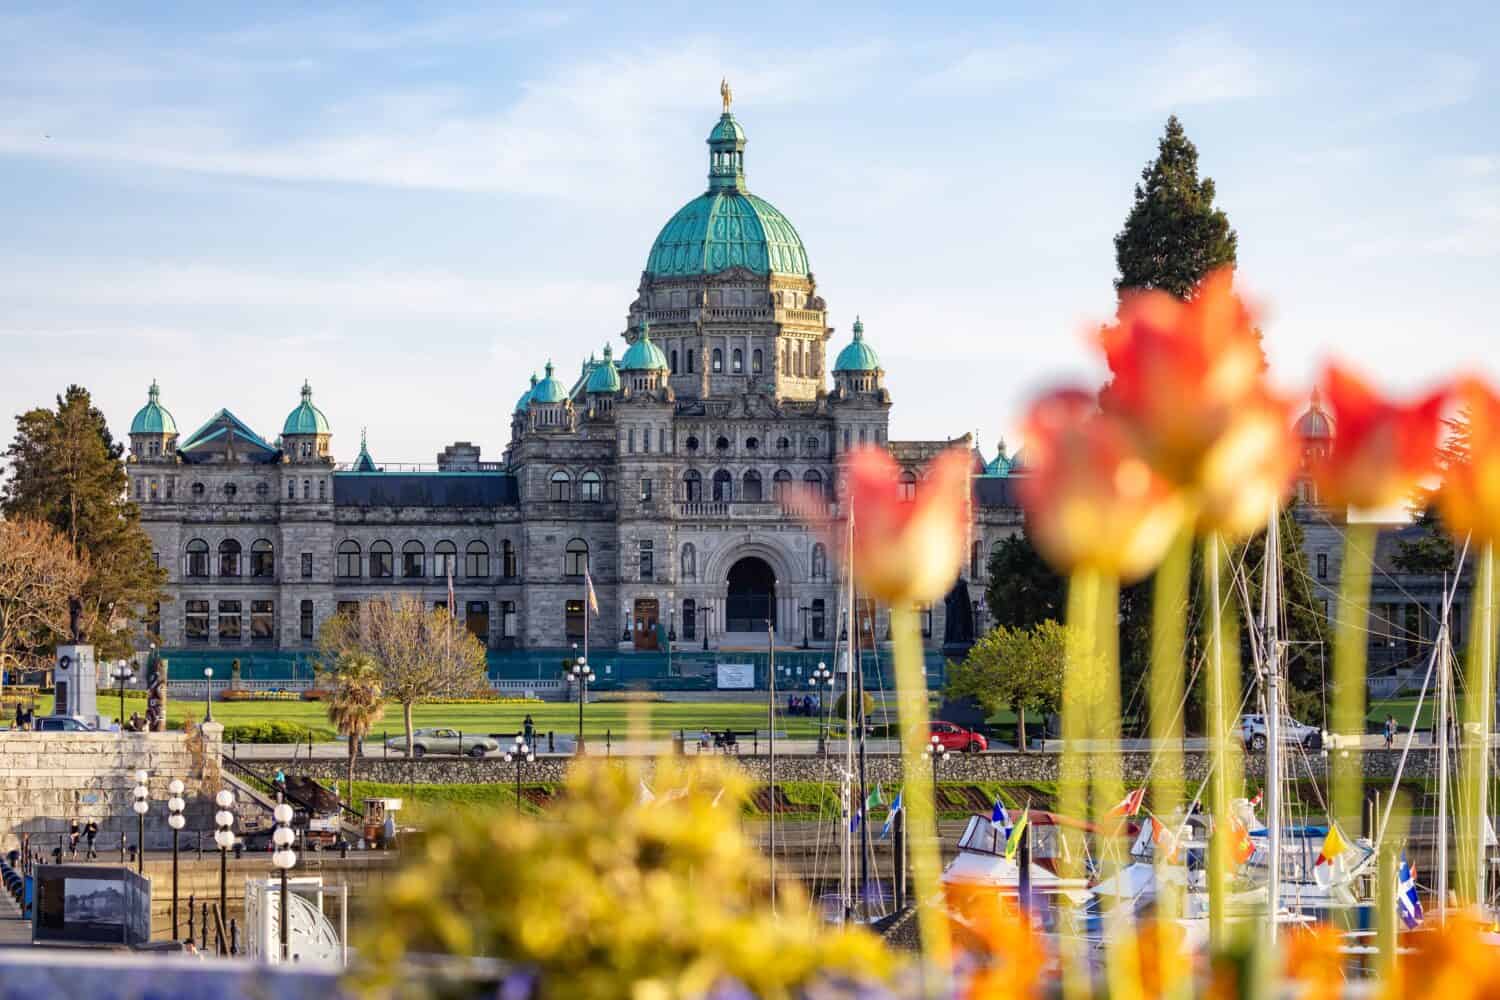 Assemblea legislativa della British Columbia nella capitale durante una giornata di sole.  Il centro di Victoria, Isola di Vancouver, BC, Canada.  Tramonto